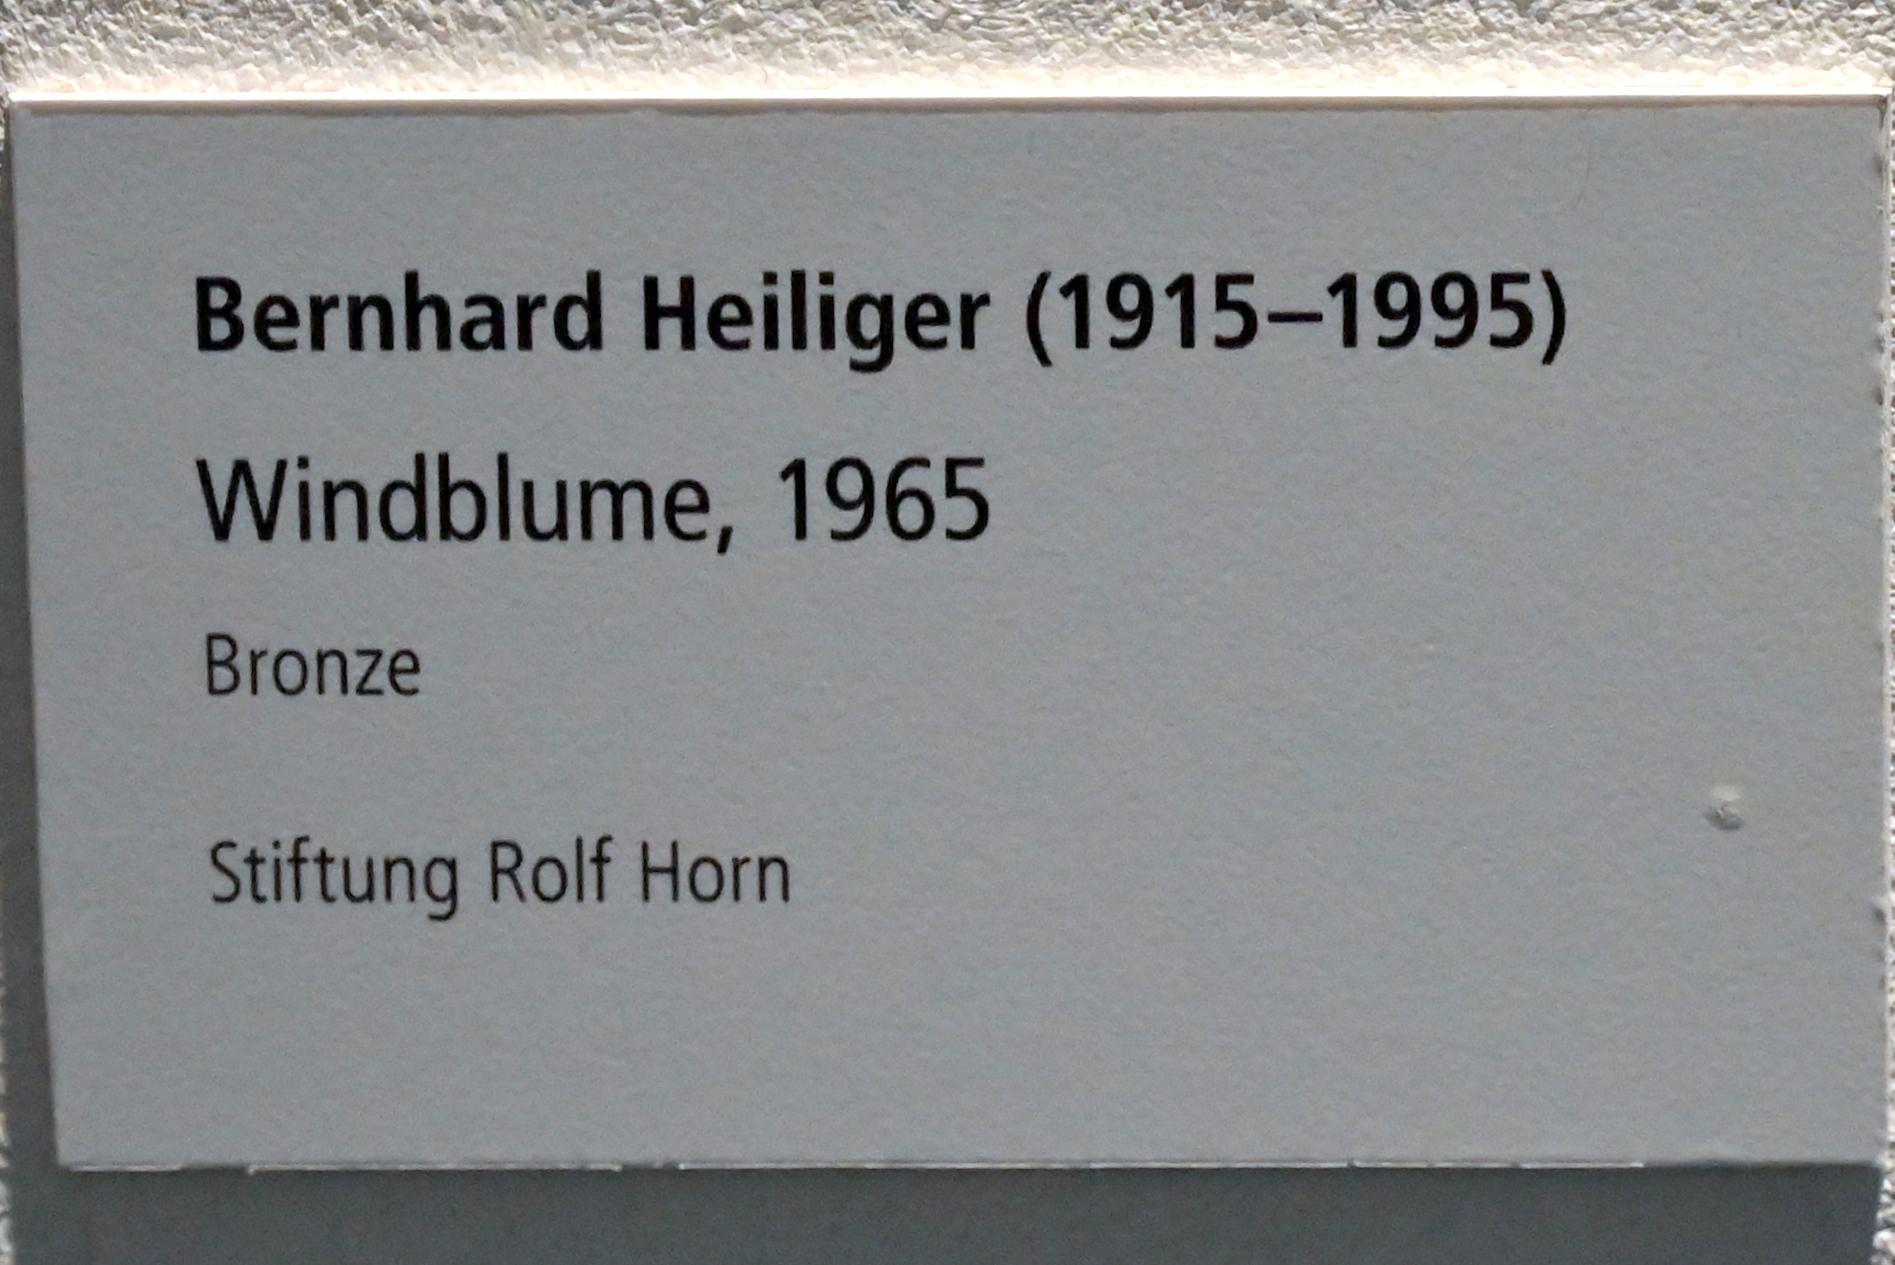 Bernhard Heiliger (1965–1983), Windblume, Schleswig, Landesmuseum für Kunst und Kulturgeschichte, Galerie der Klassischen Moderne, 1965, Bild 4/4